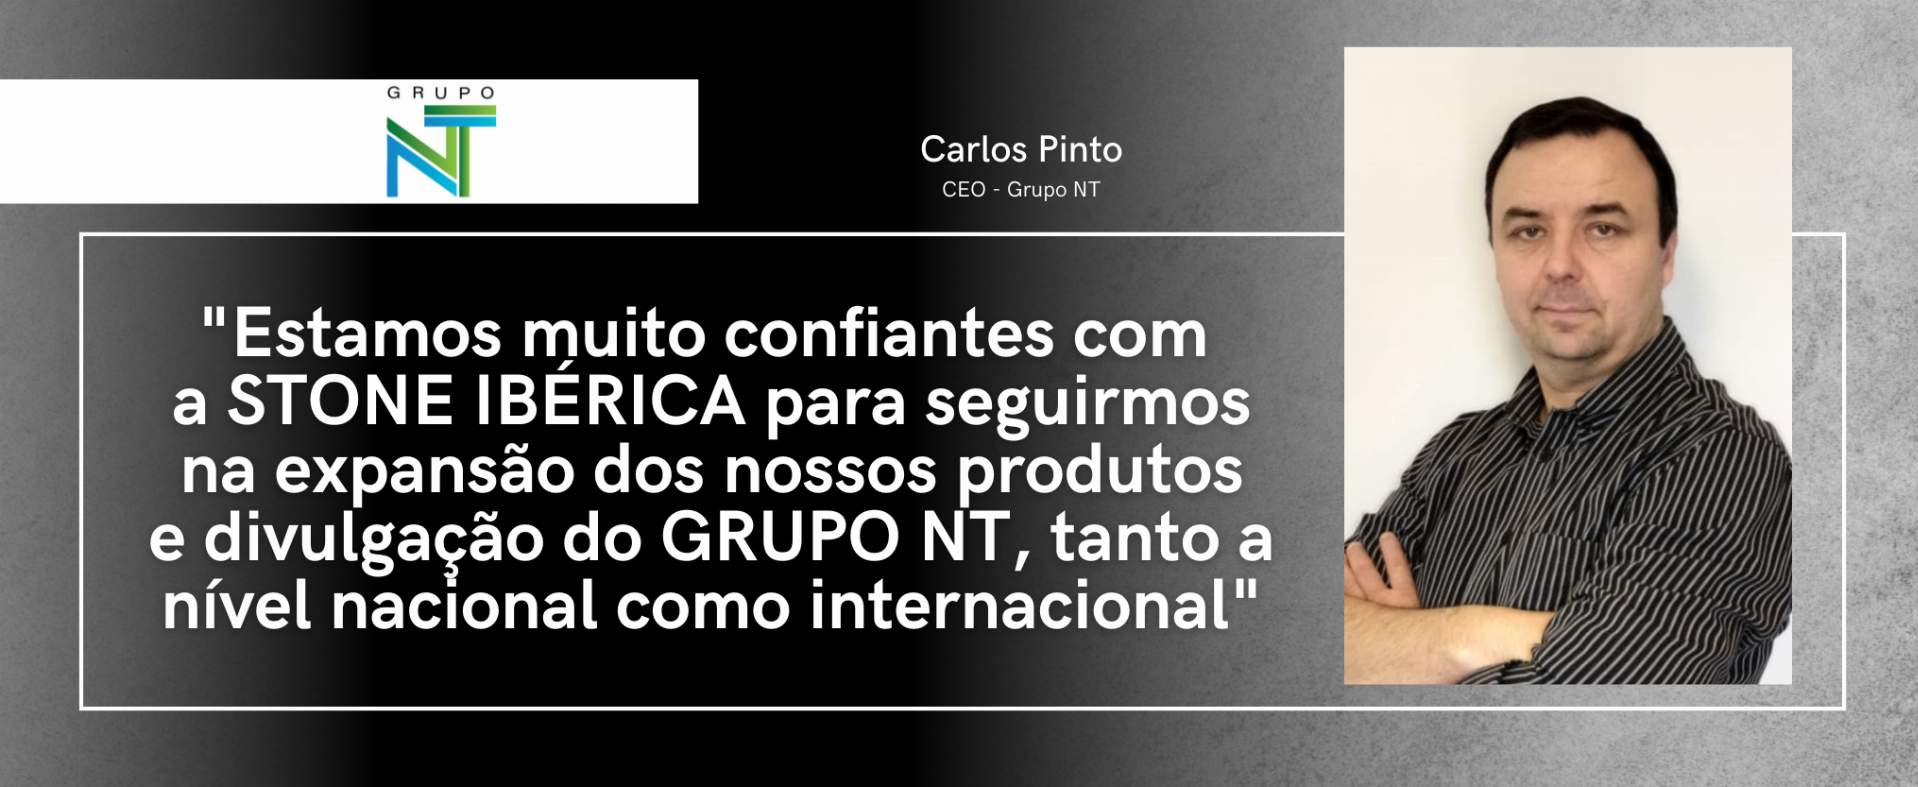 Grupo NT : "Nous sommes très confiants dans la capacité de STONE IBÉRICA à continuer à développer nos produits et à promouvoir le Grupo NT, tant au niveau national qu'international".